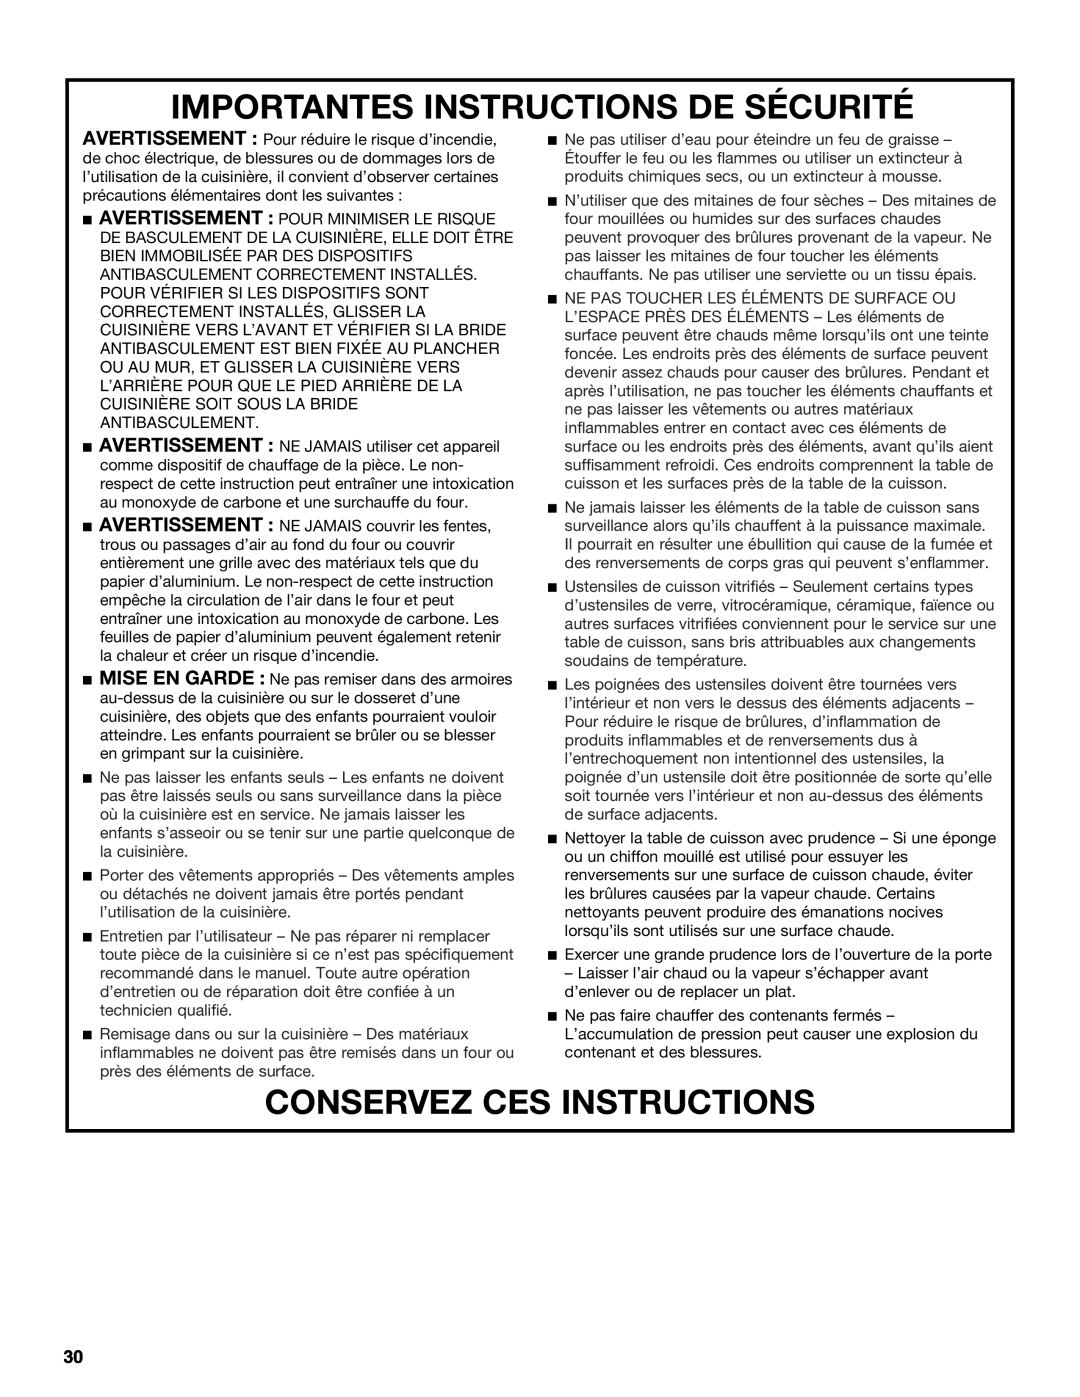 KitchenAid KDRS505XSS manual Importantes Instructions De Sécurité, Conservez Ces Instructions 